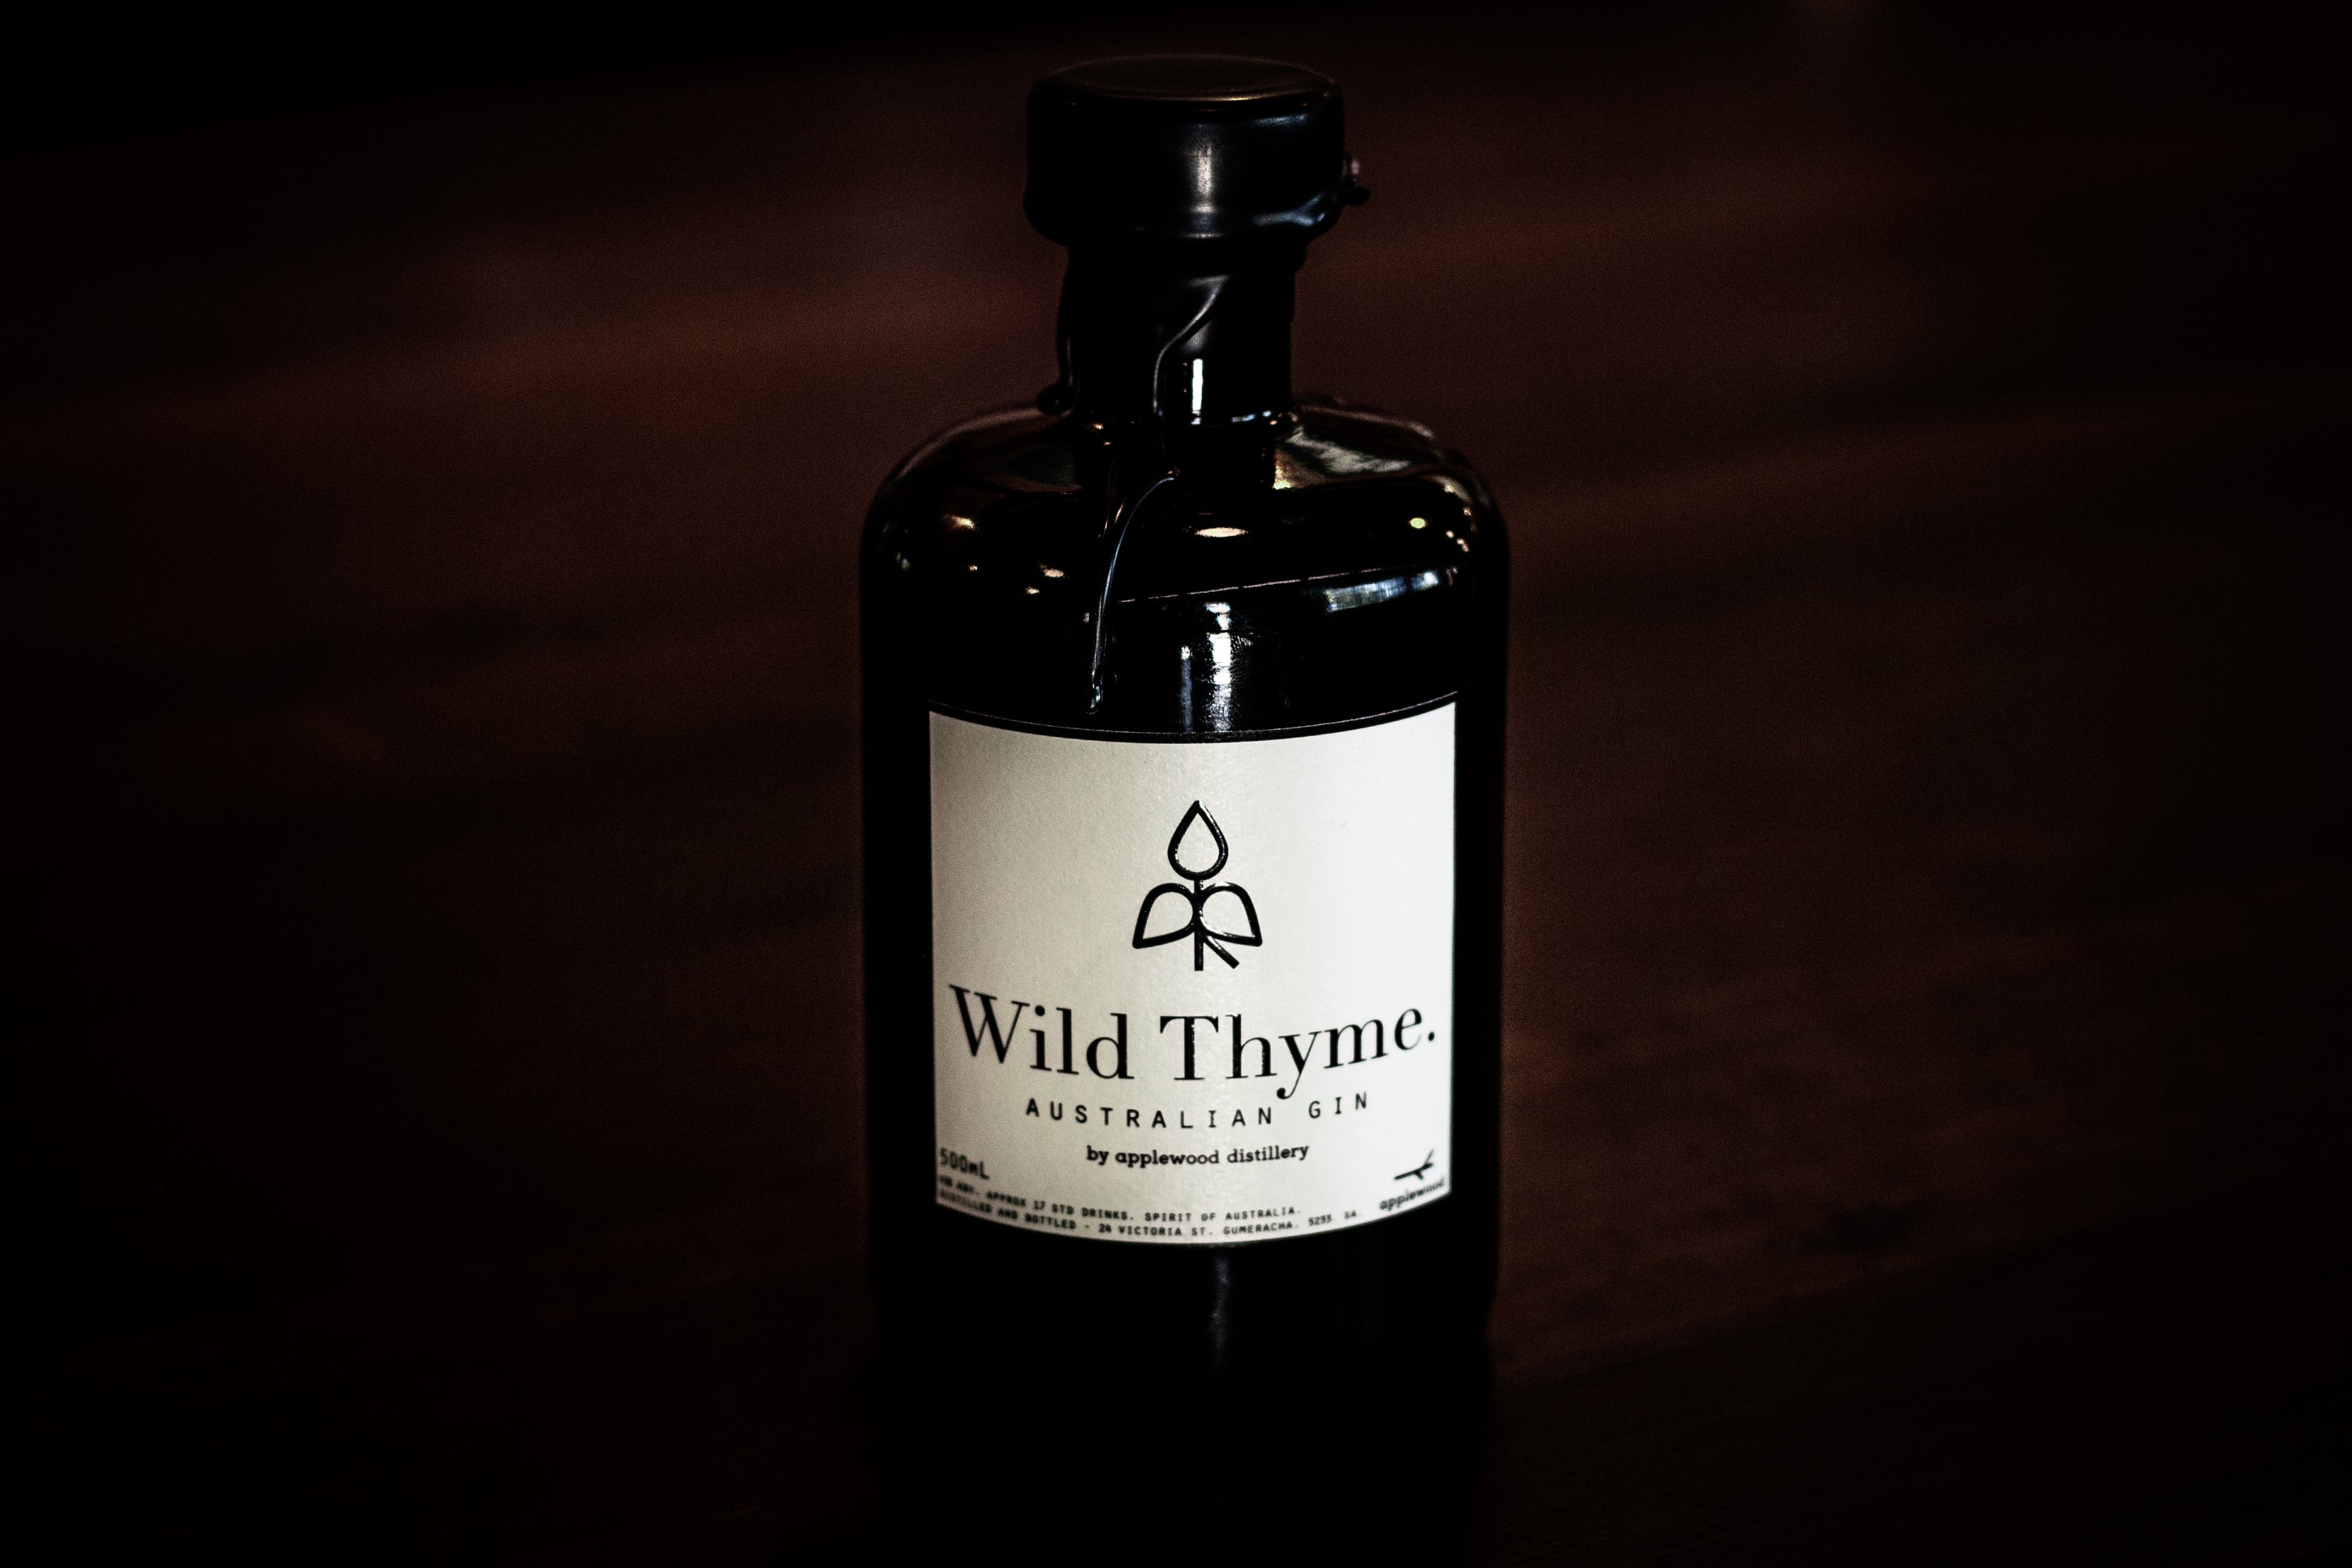 wild thyme gin - Applewood Distillery